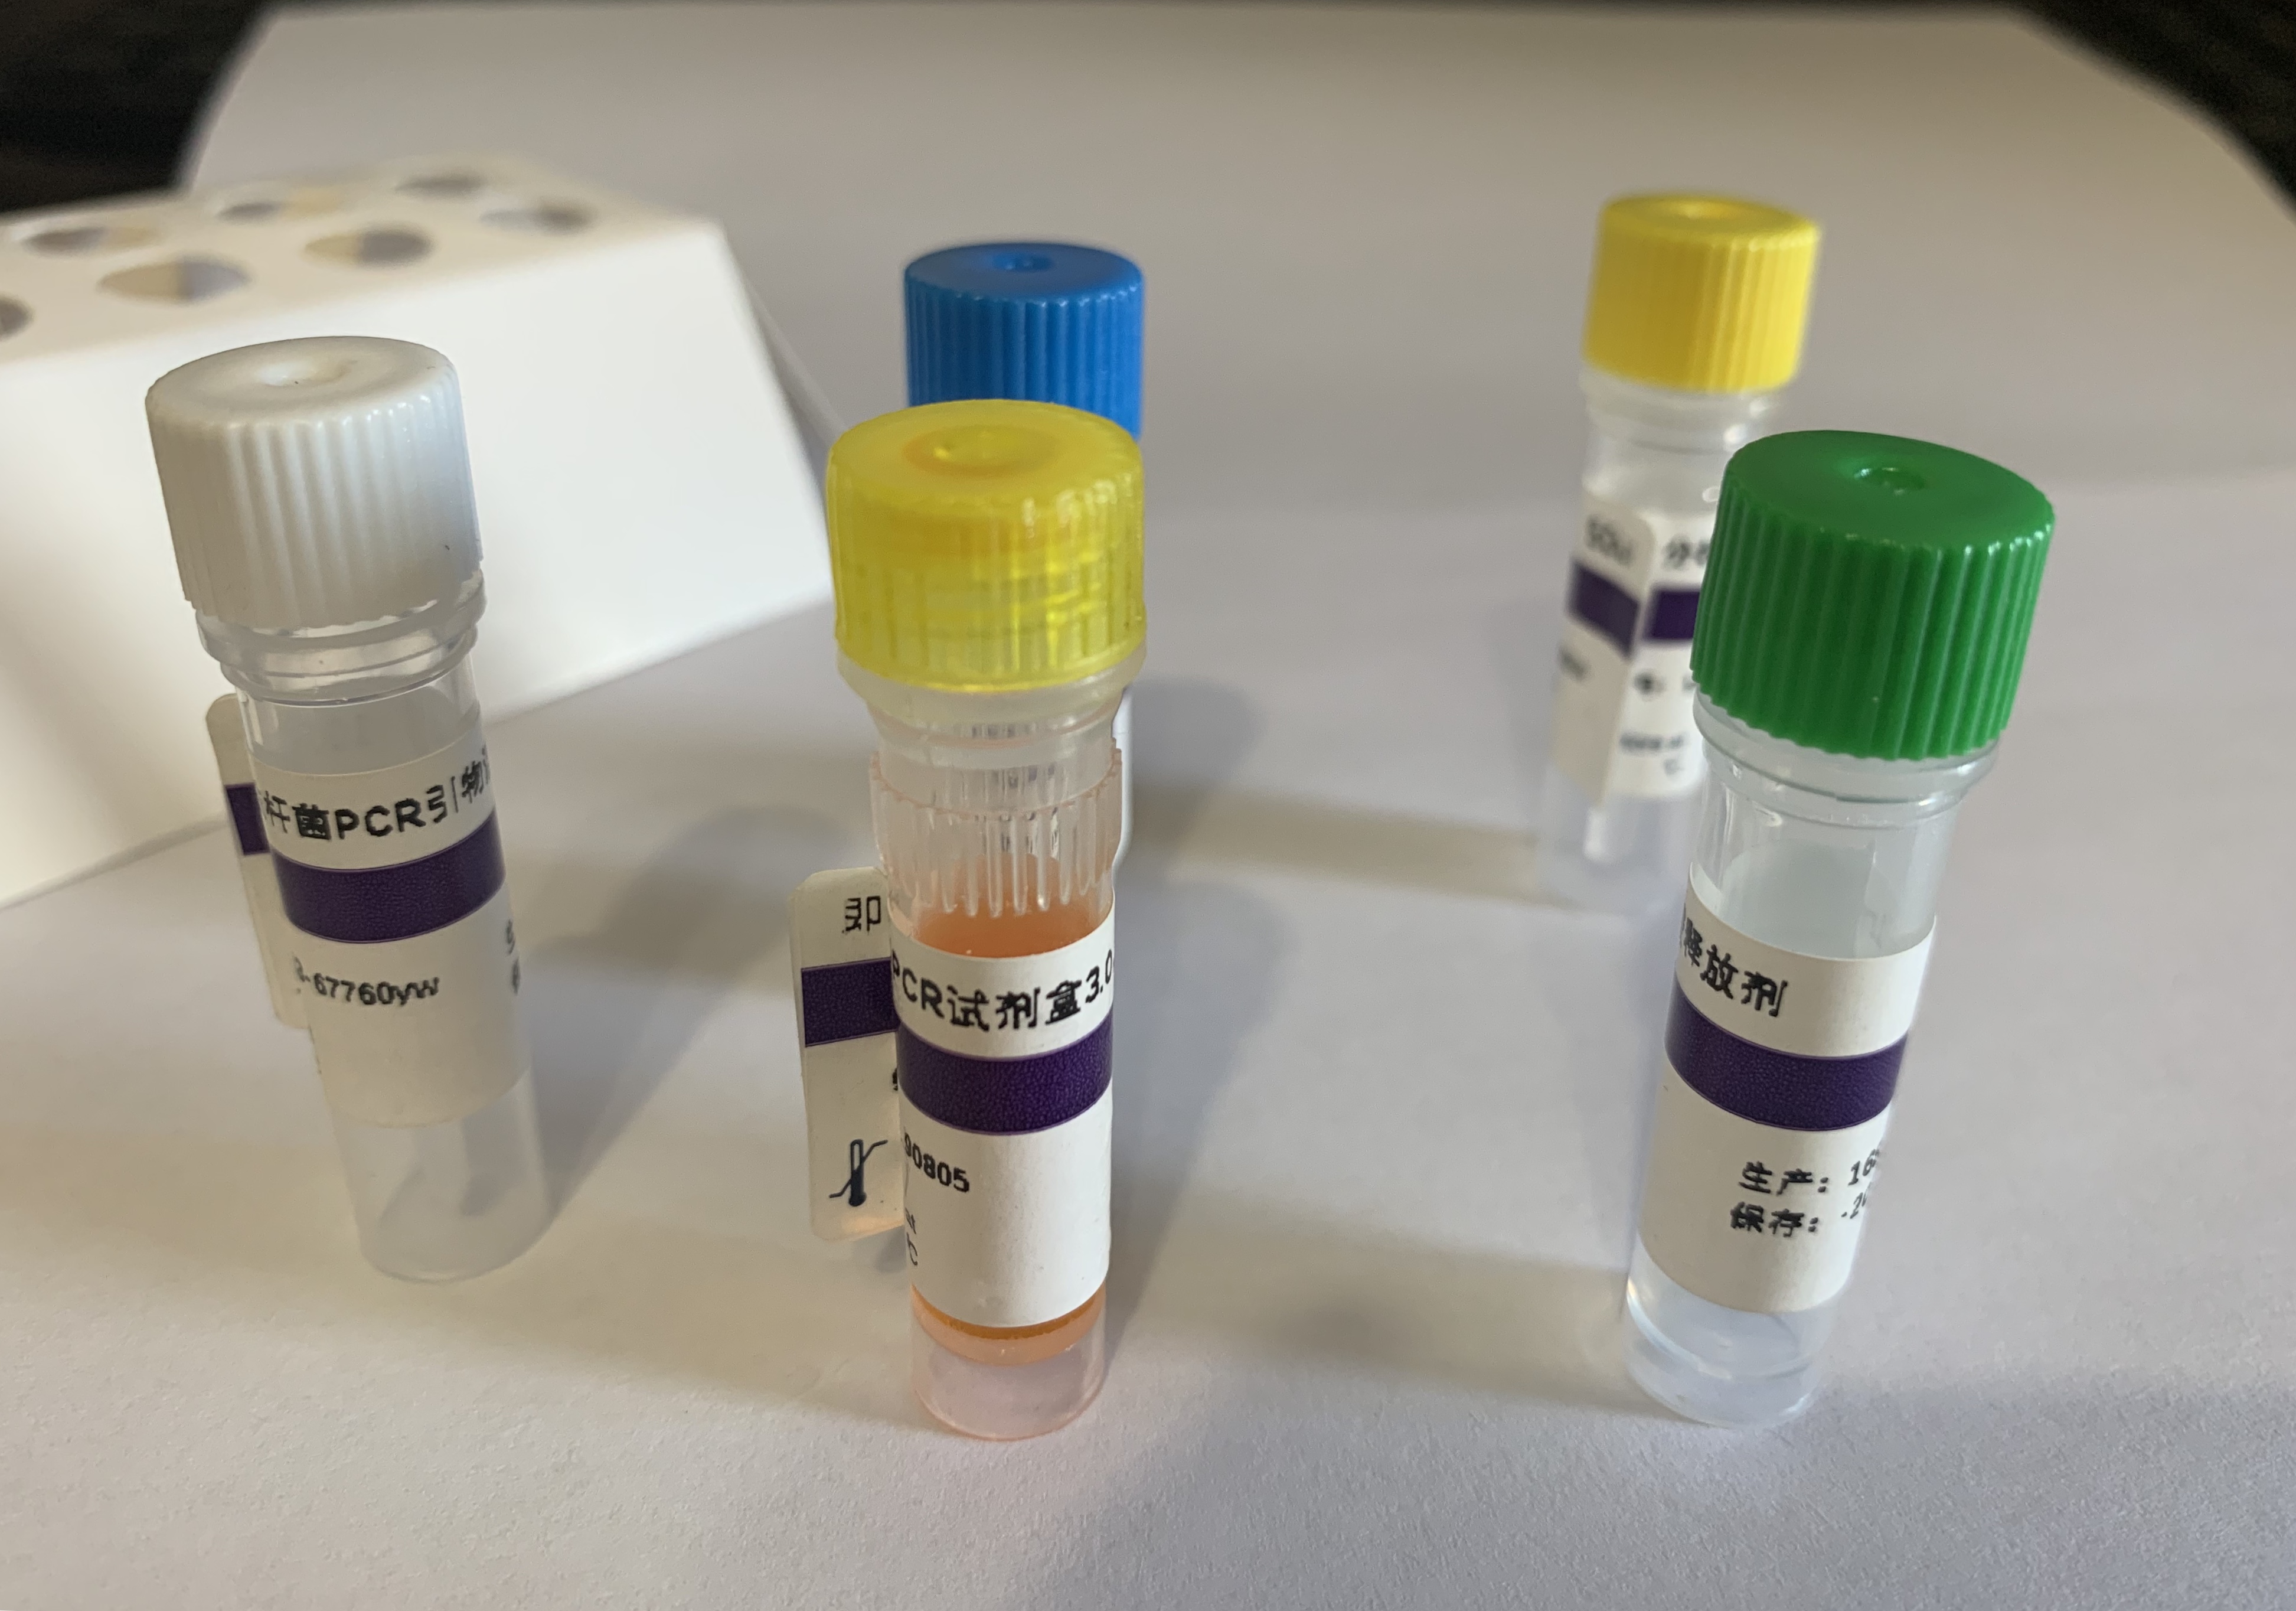 椰子死亡类病毒RT-PCR试剂盒